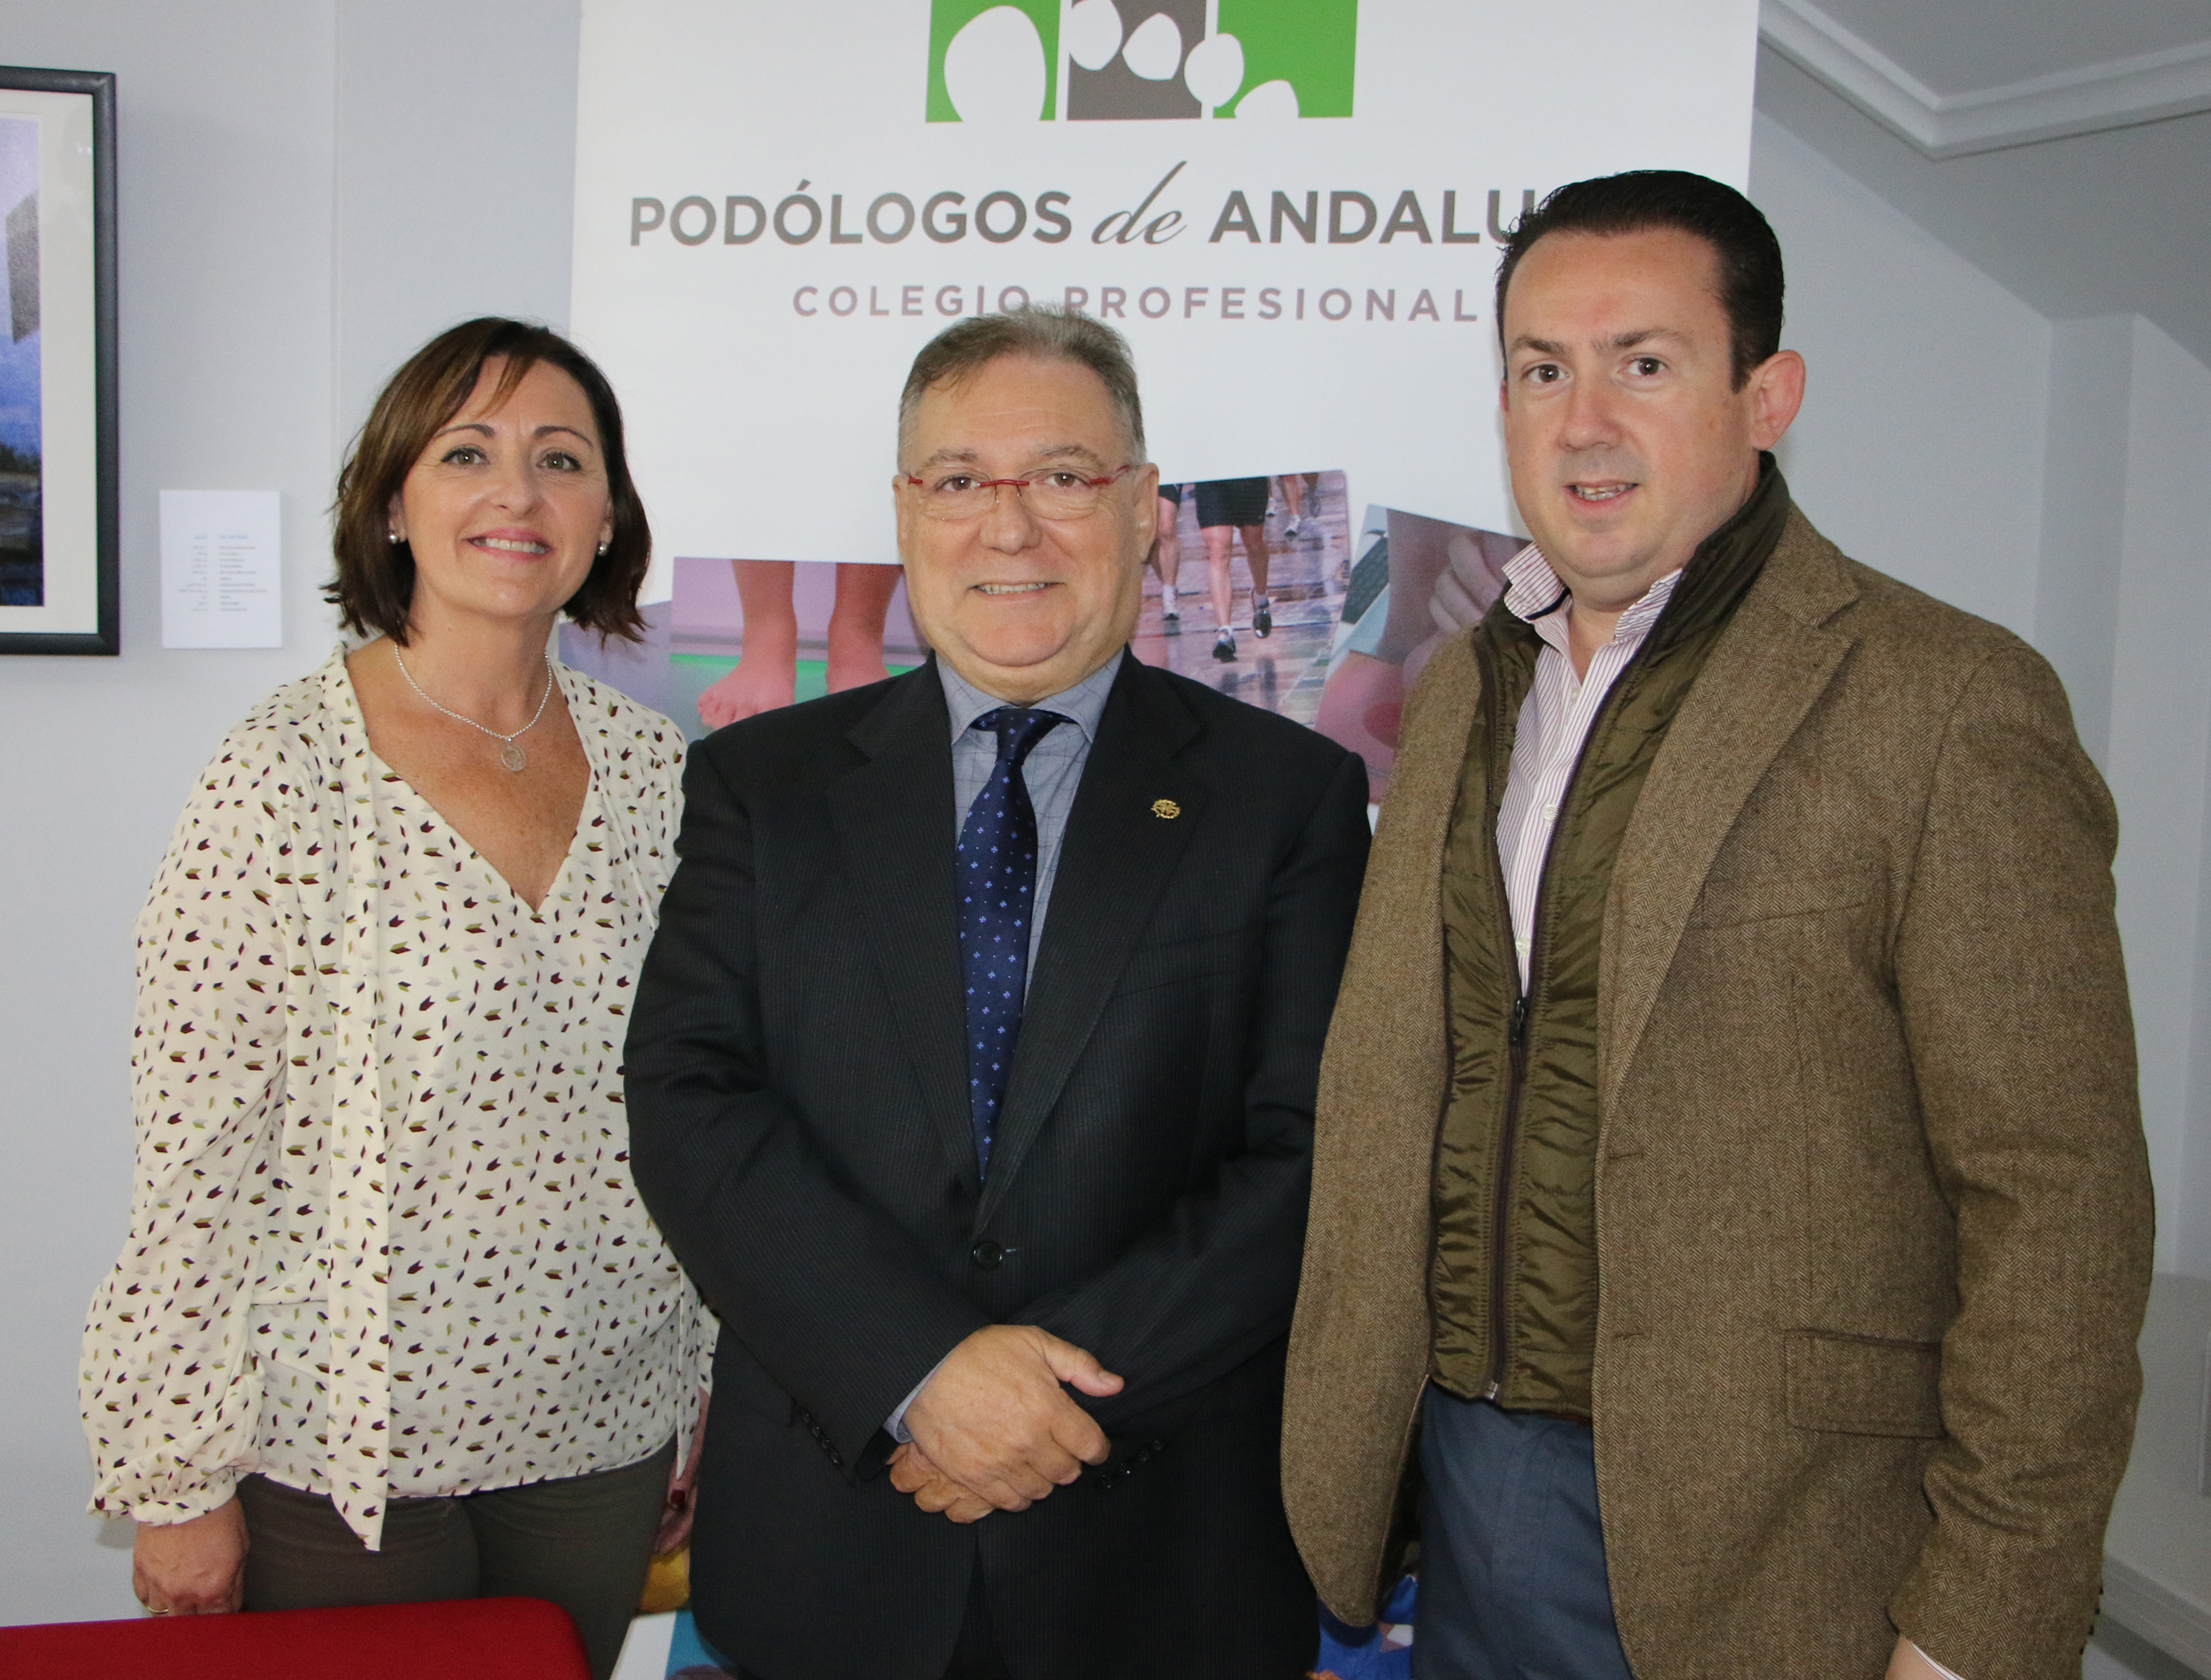 El Colegio Profesional de Andalucía y FADA piden la inclusión de podólogos en las unidades de Pie Diabético de los hospitales públicos andaluces